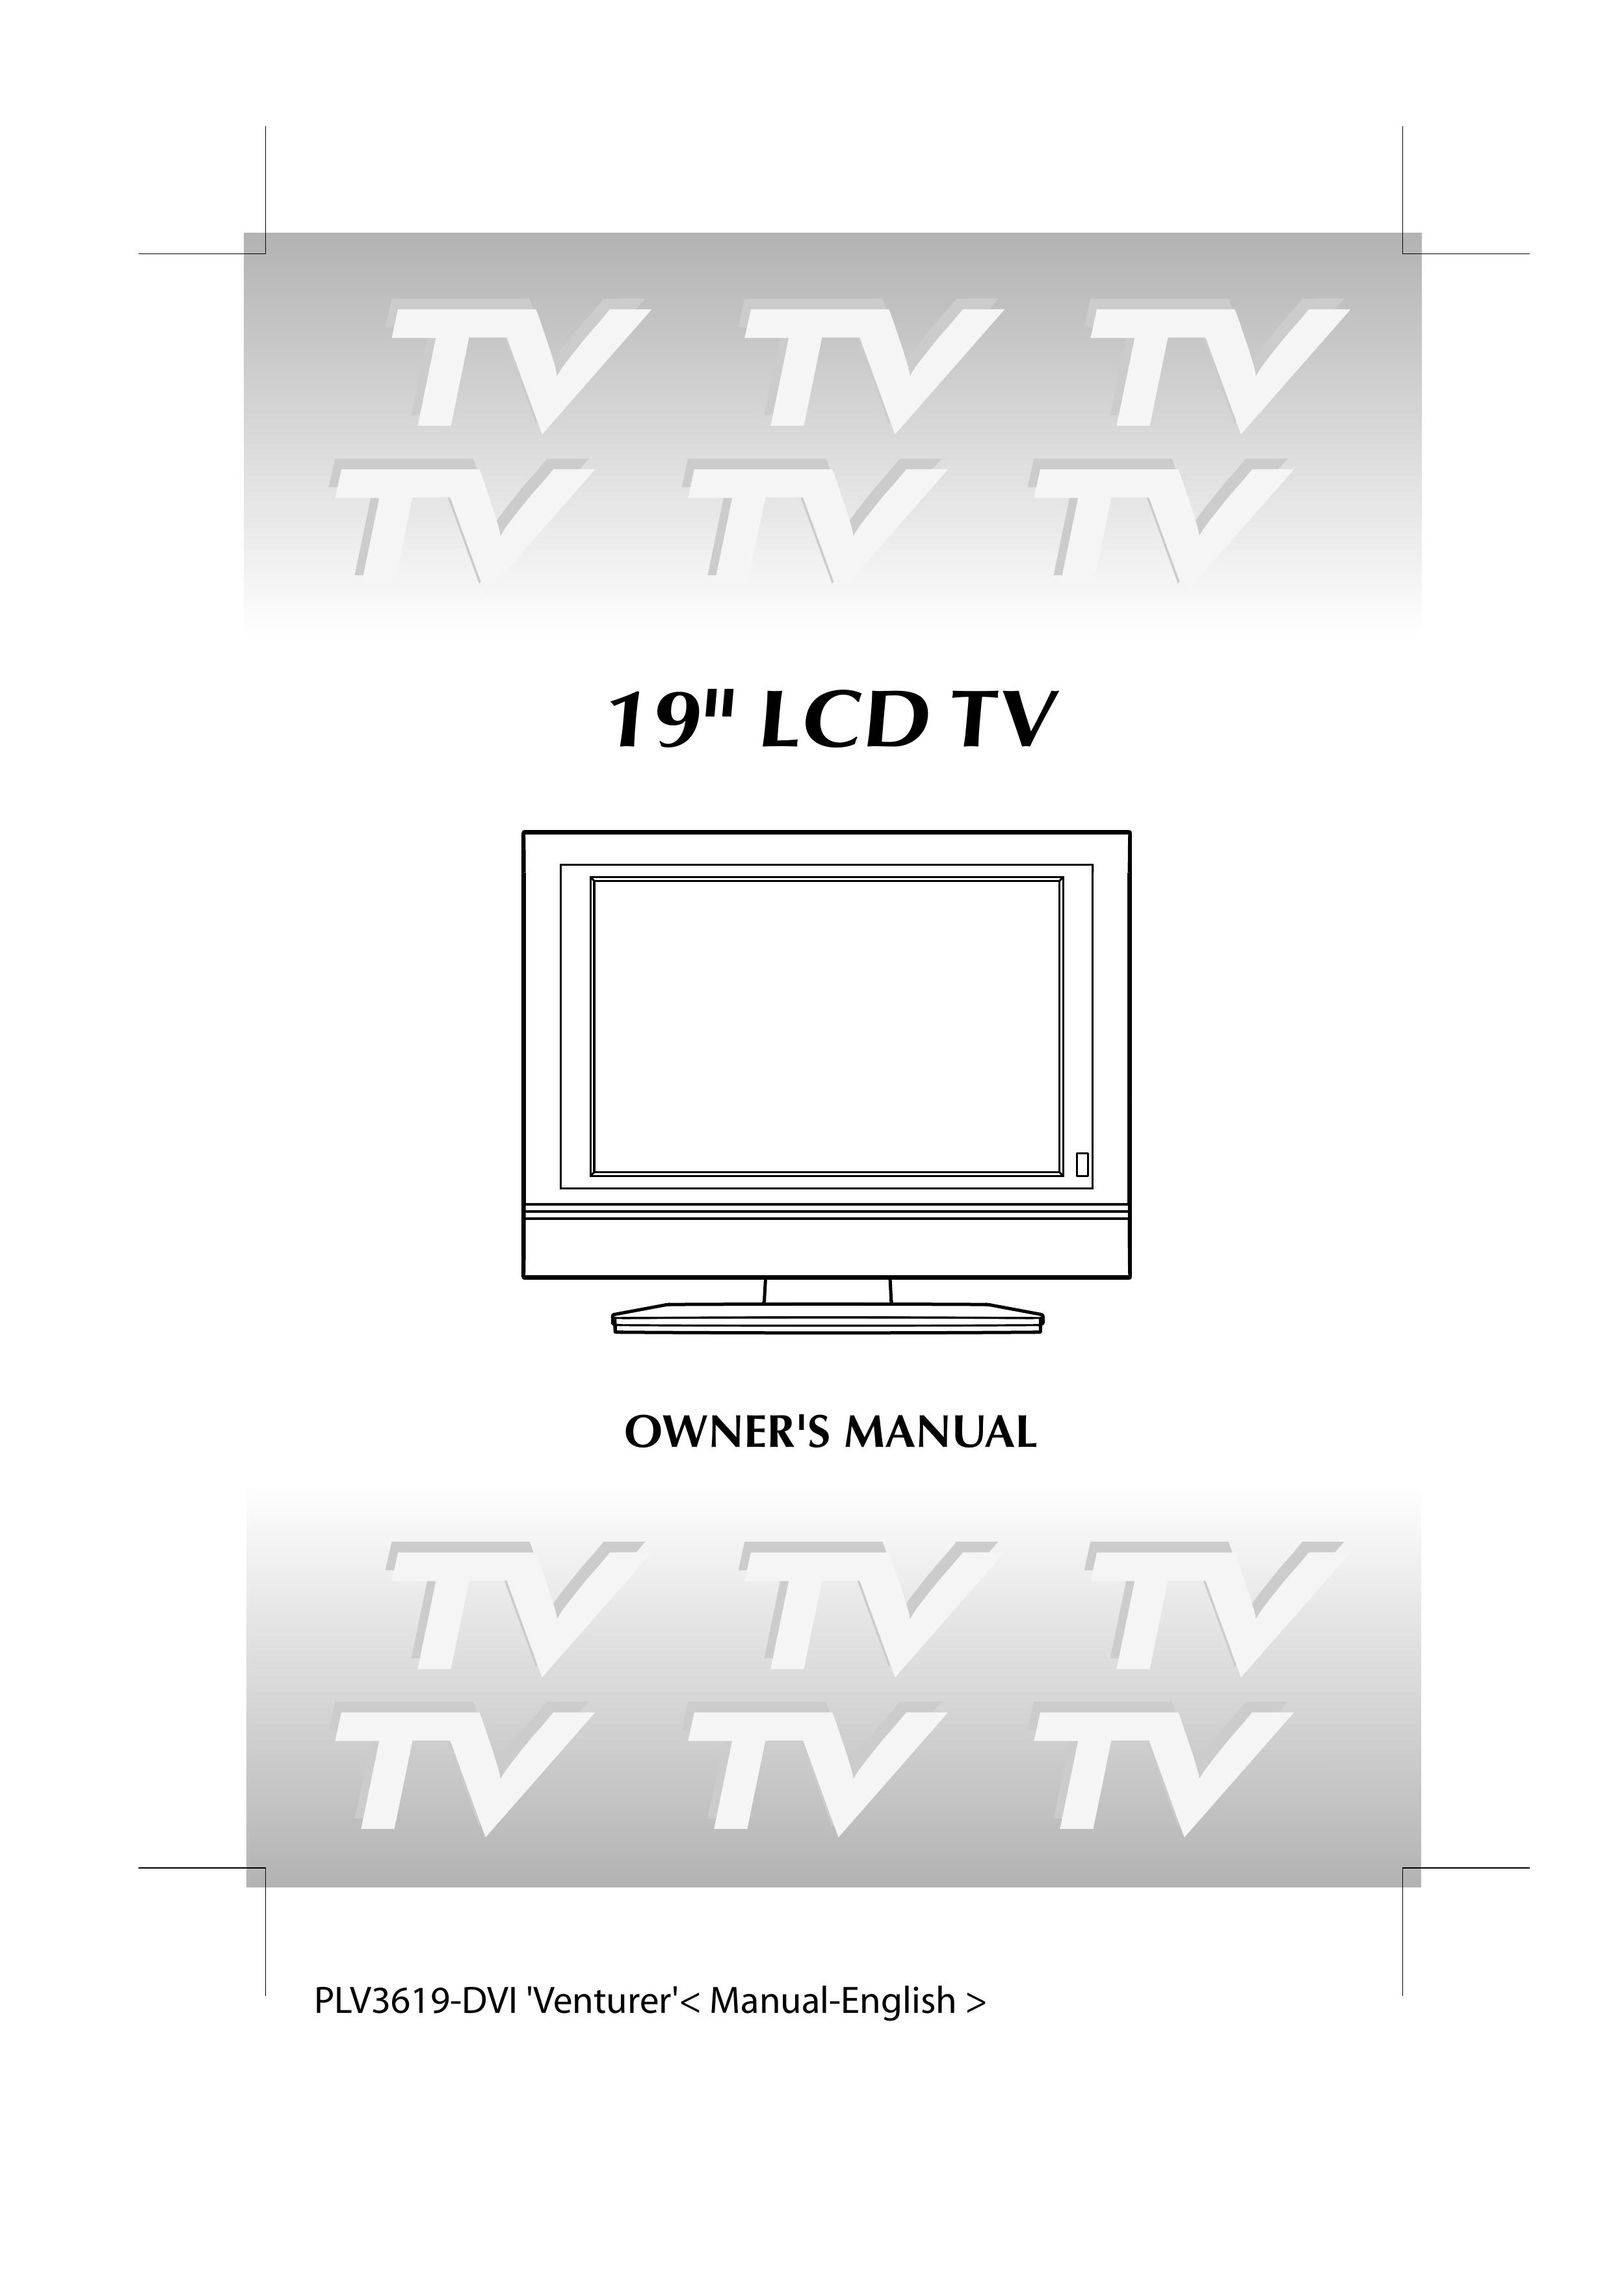 Venturer PLV36190S5W Flat Panel Television User Manual